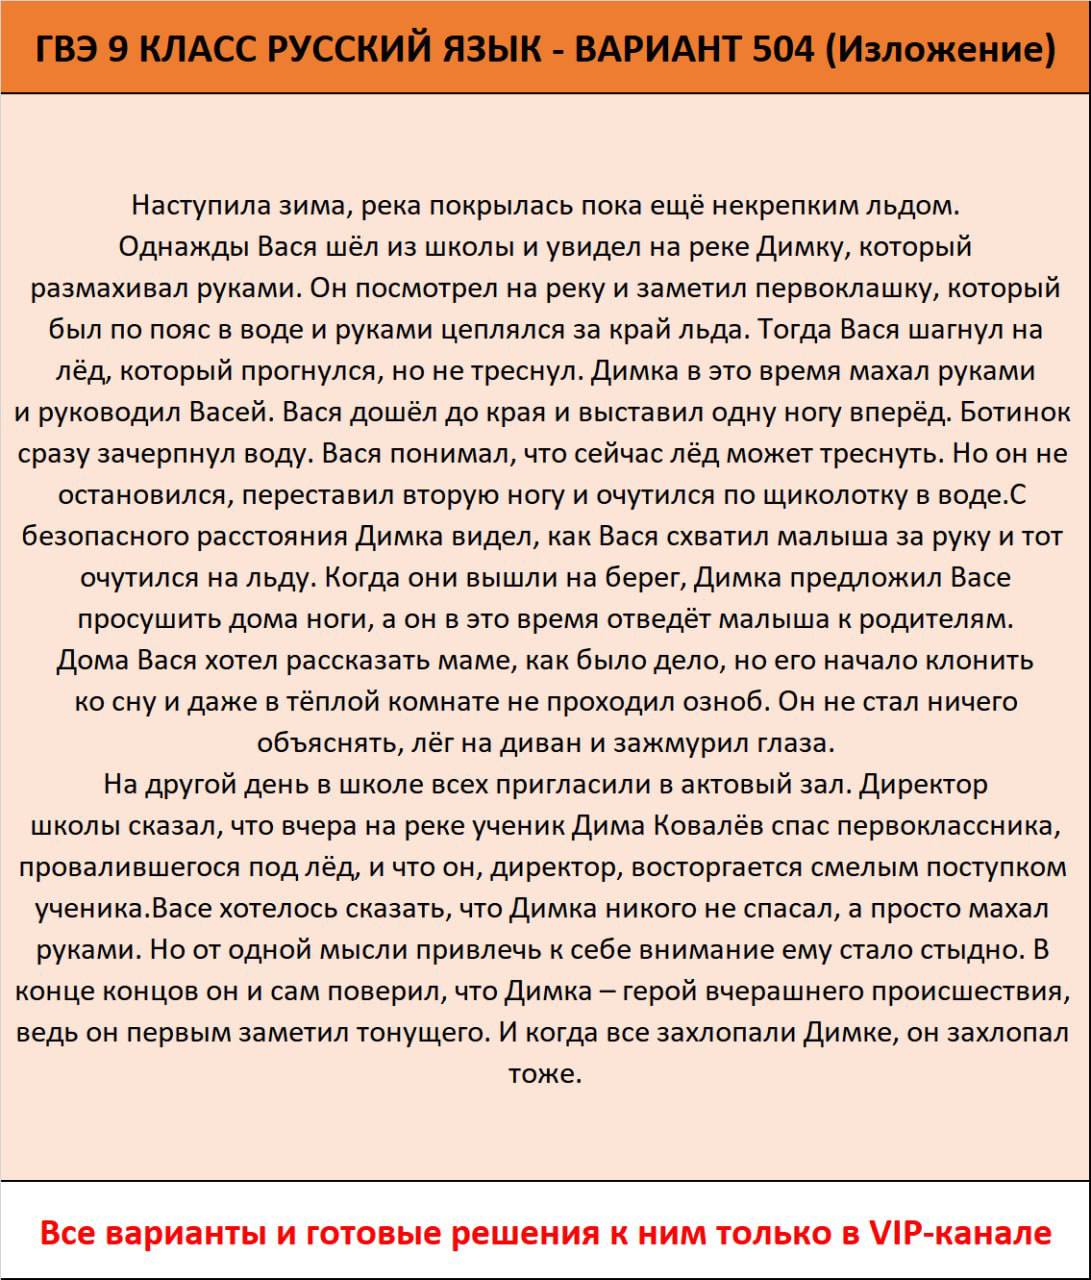 Телеграмм по русскому языку огэ фото 25